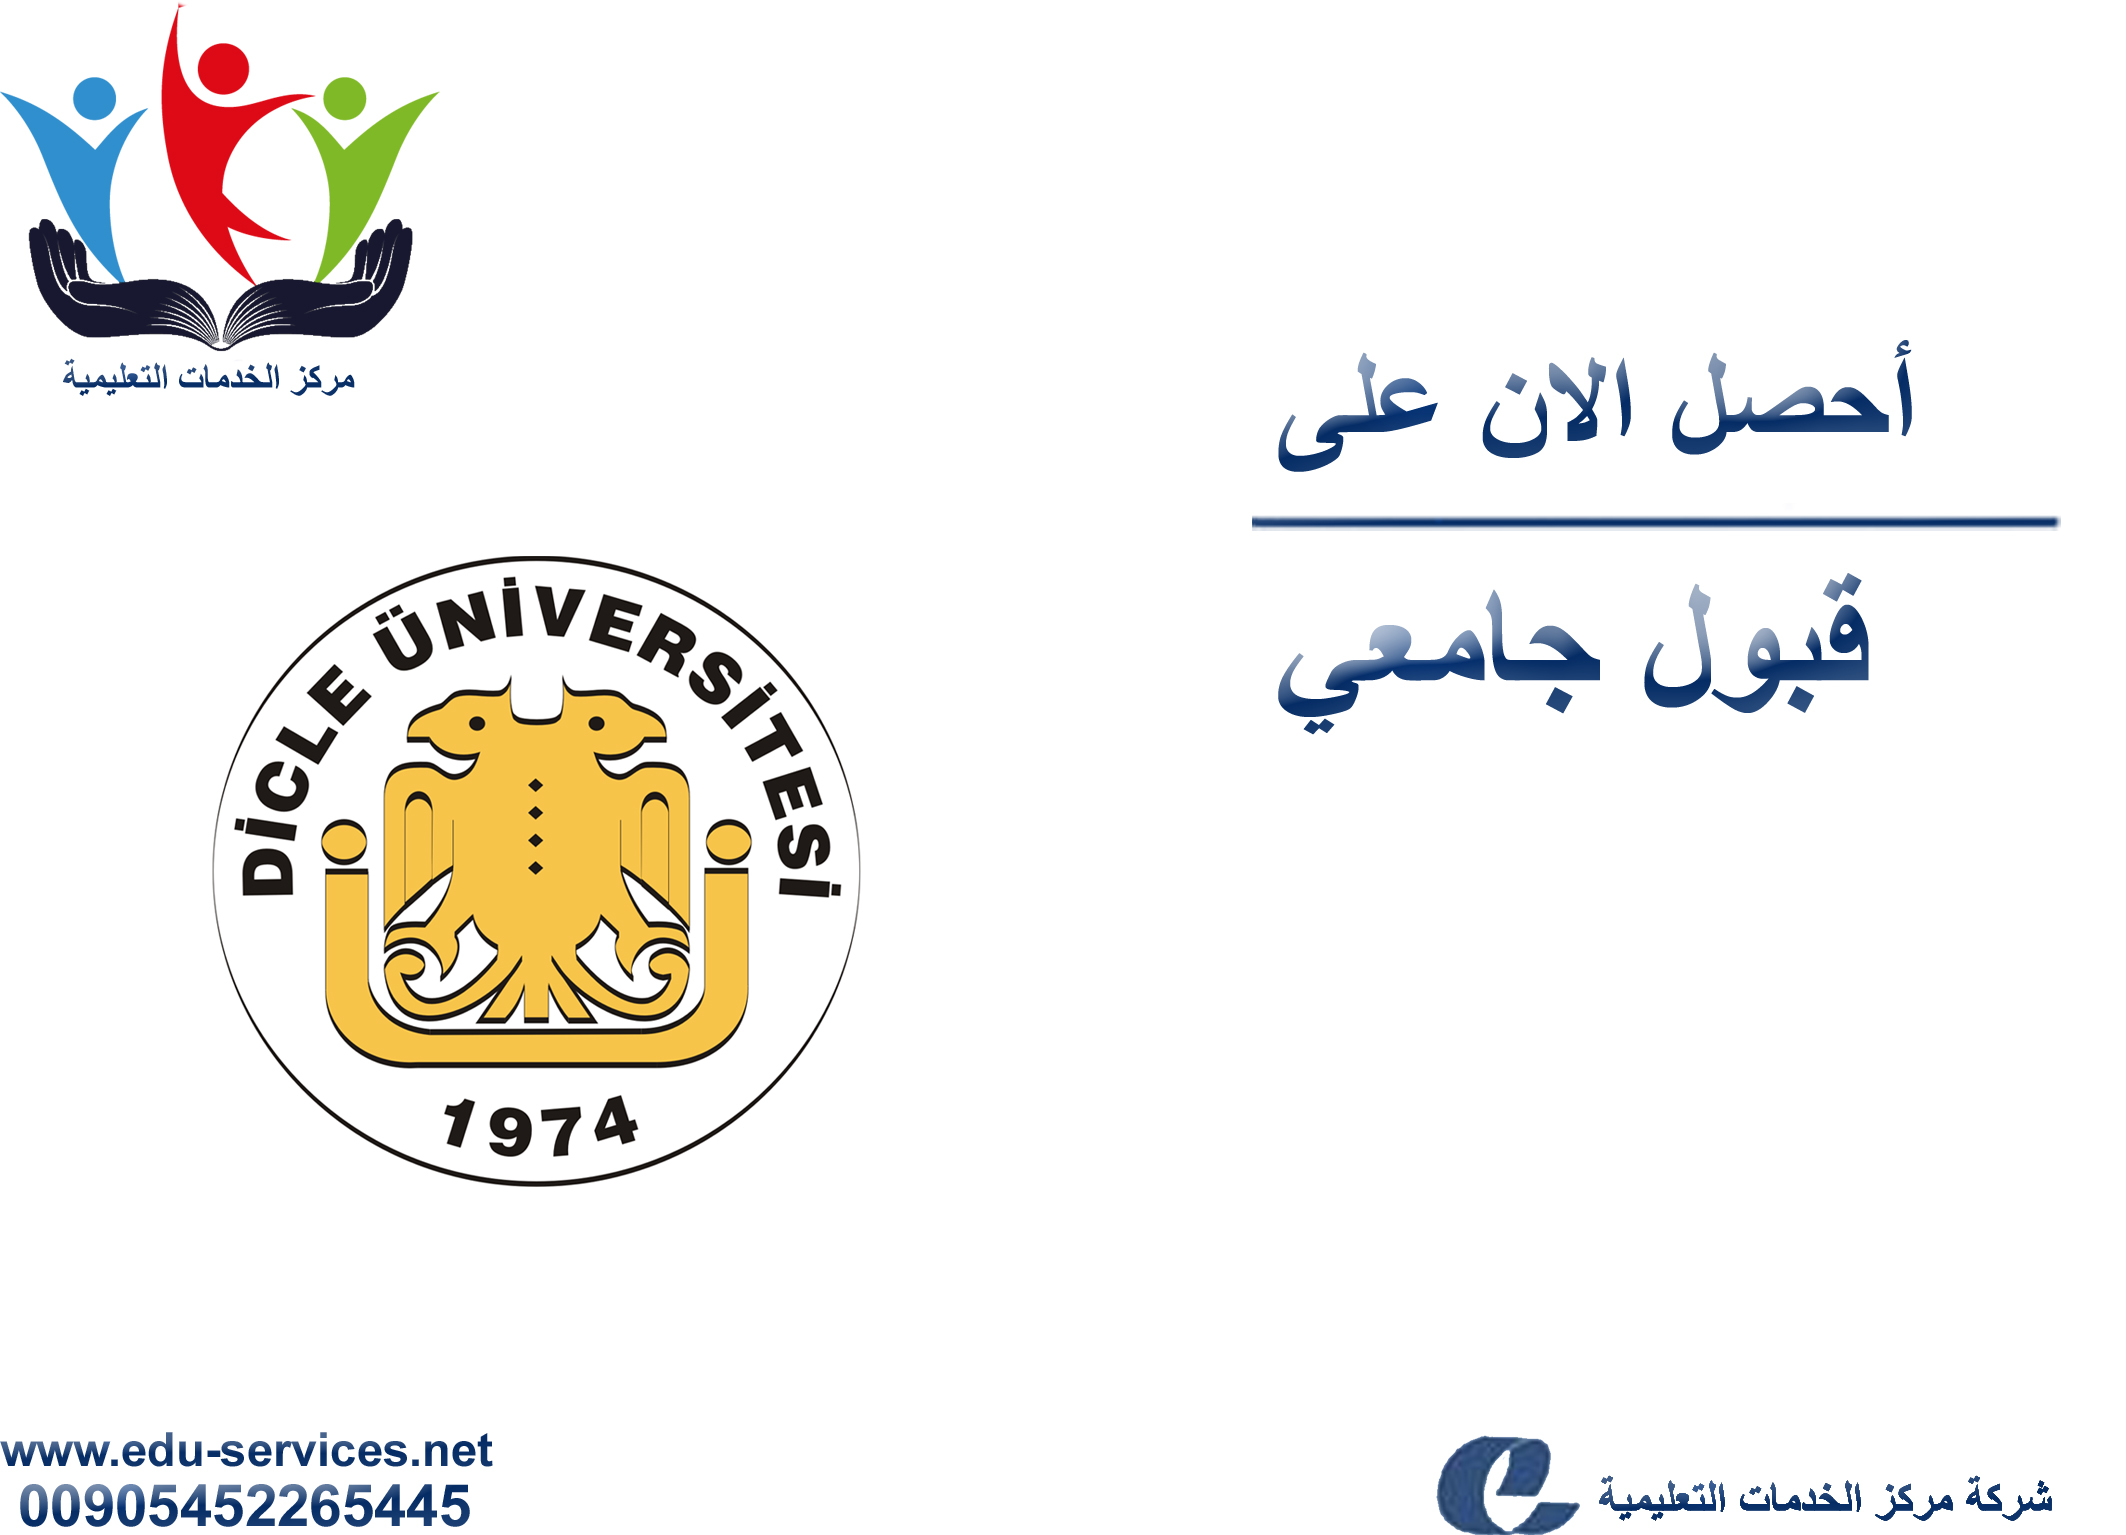 افتتاح التسجيل في جامعة دجلة للعام 2017-2018